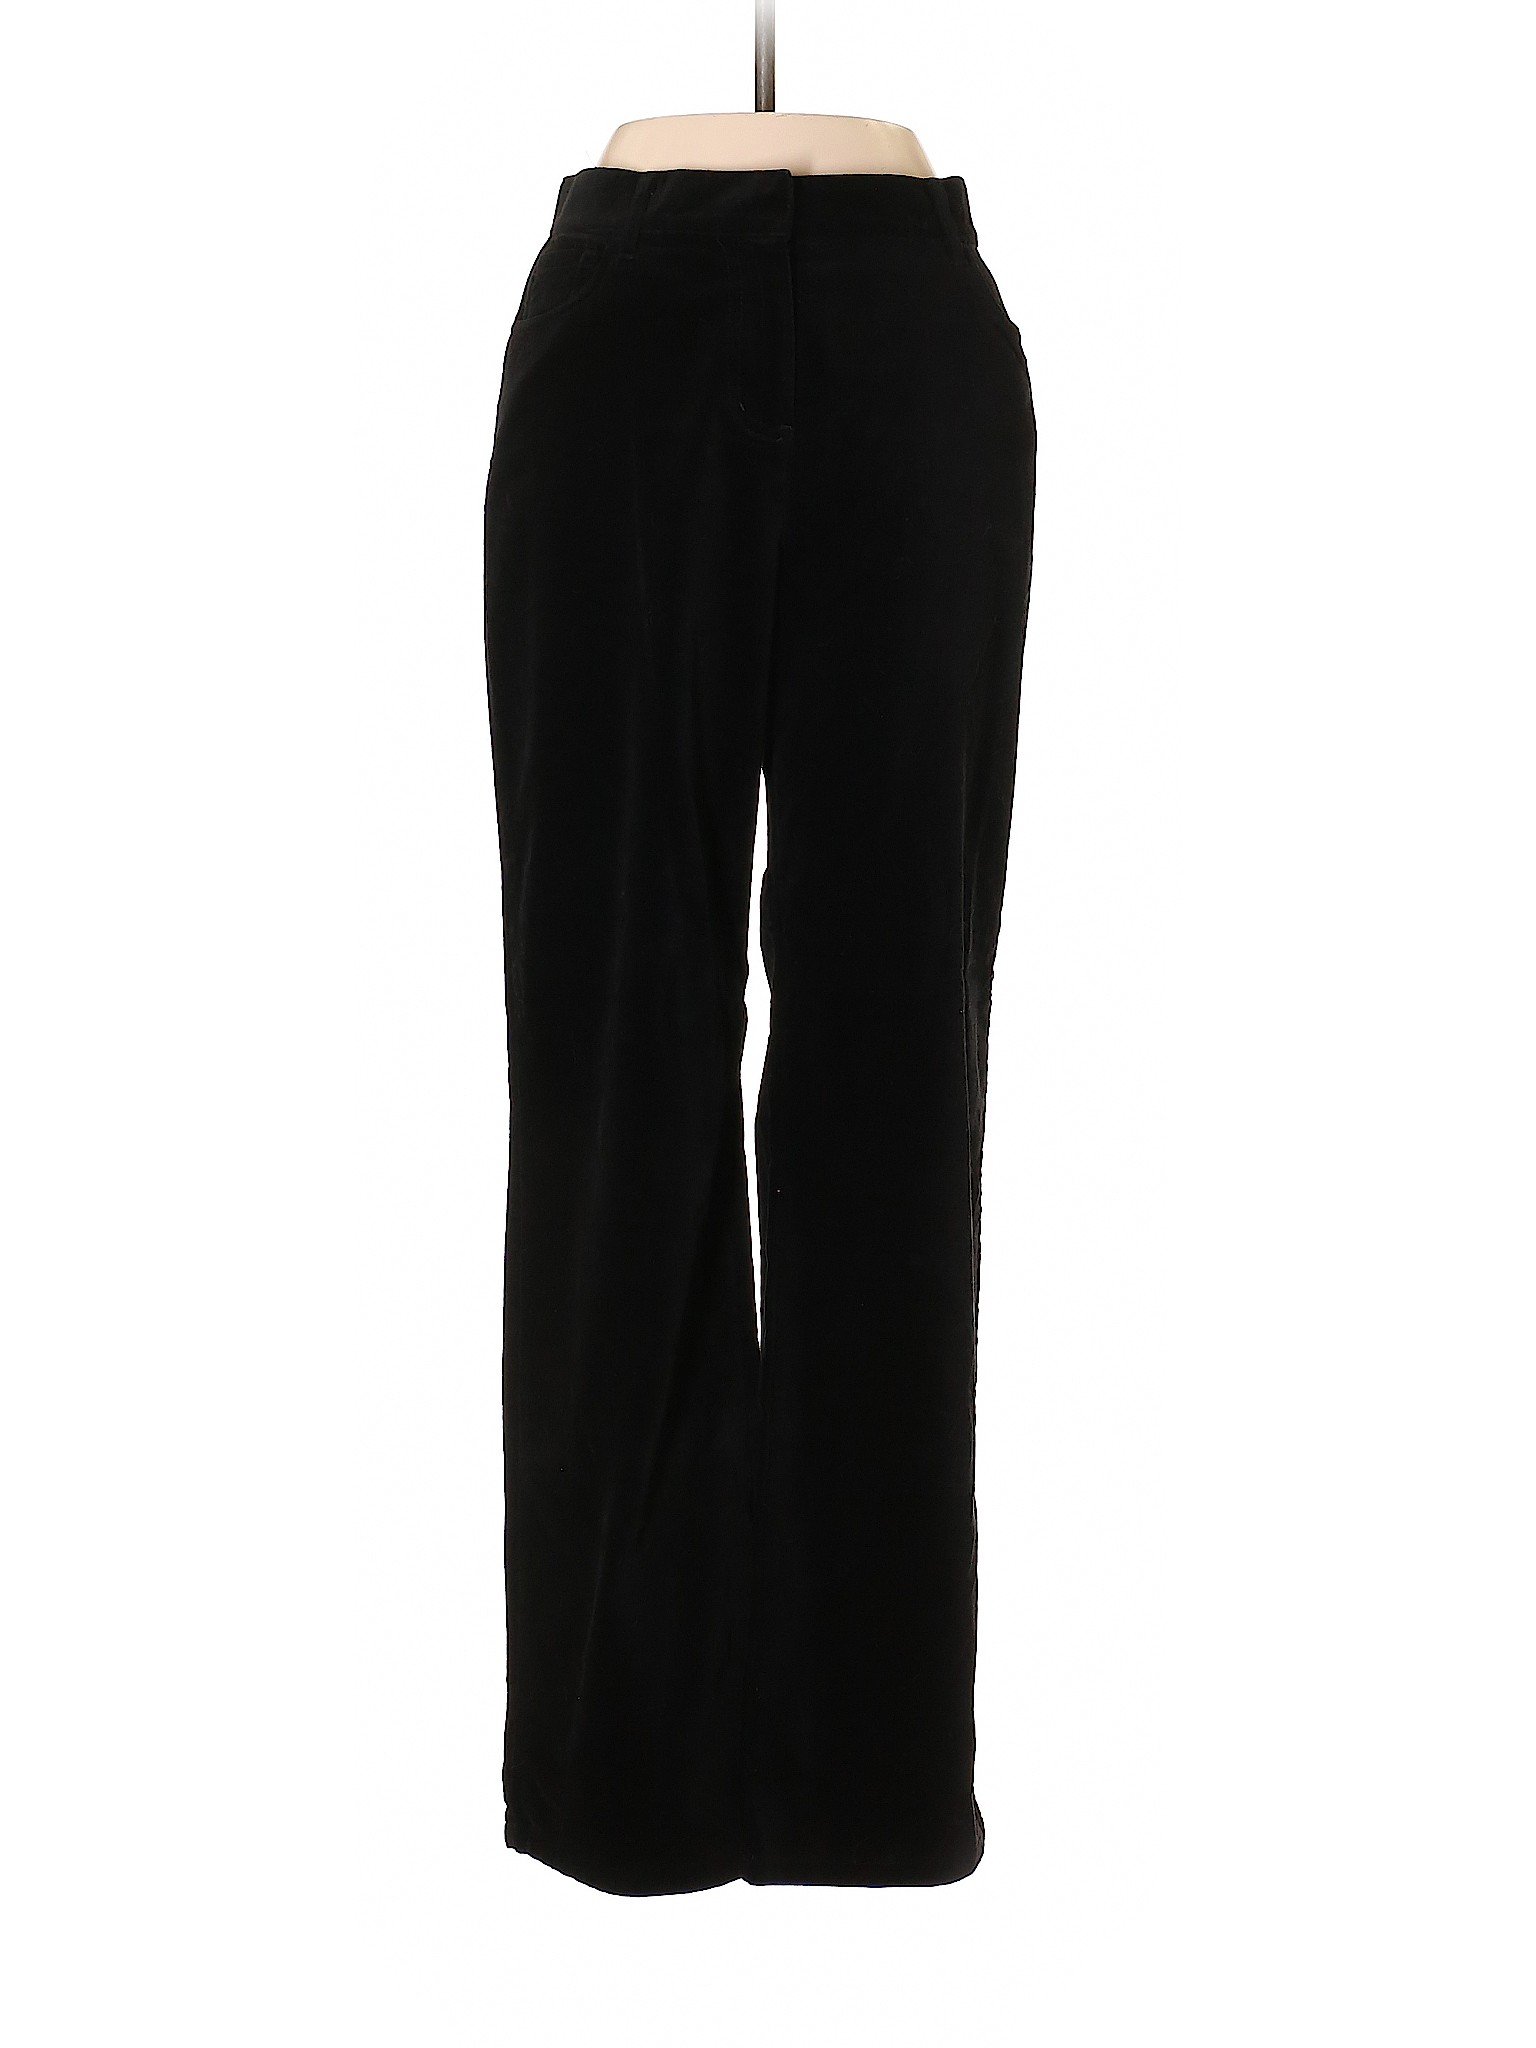 Ann Taylor Women Black Velour Pants 4 | eBay